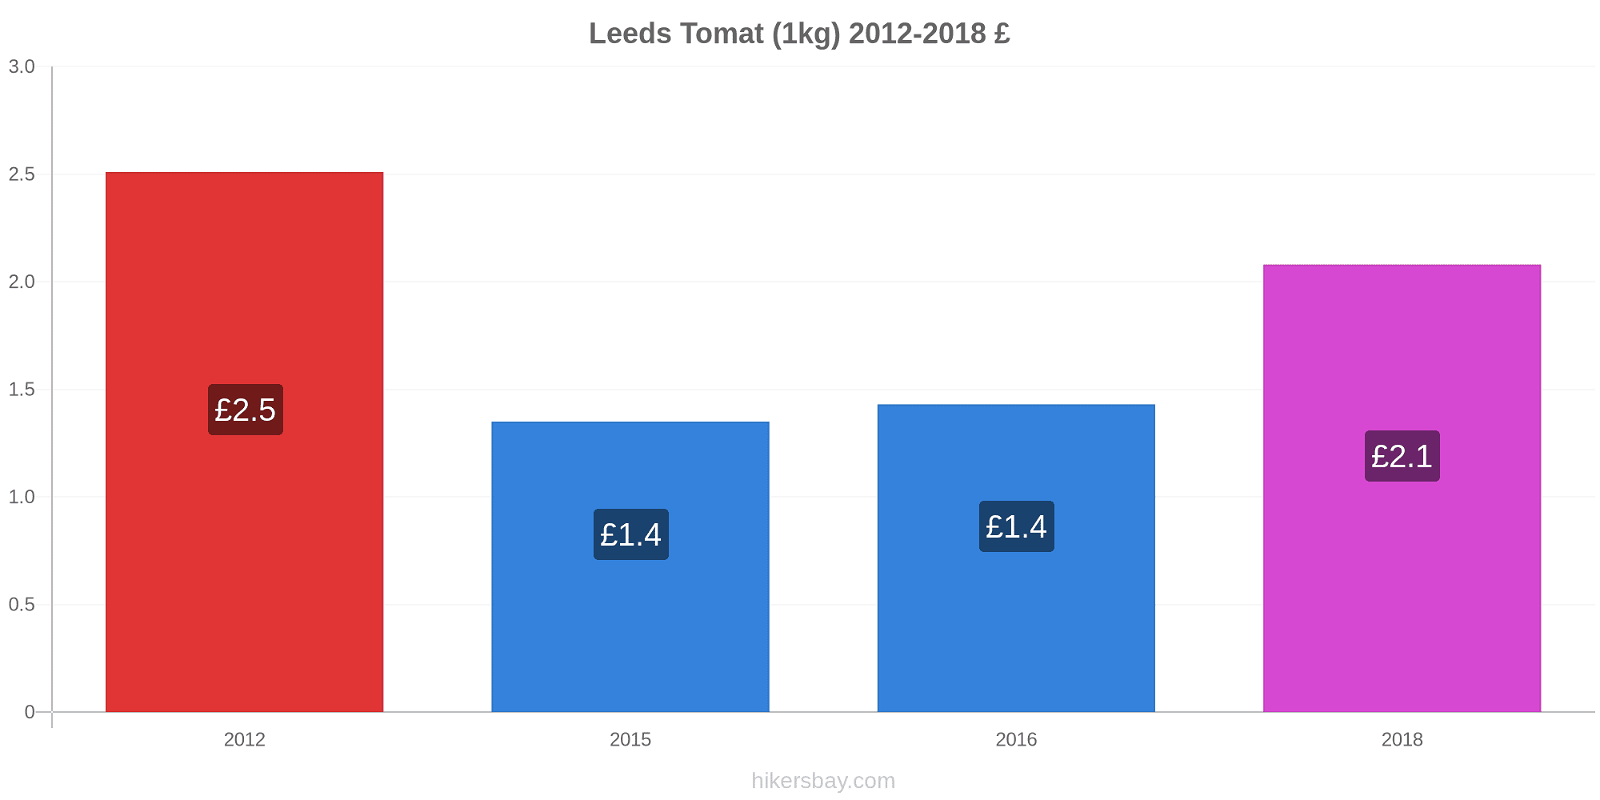 Leeds prisförändringar Tomat (1kg) hikersbay.com